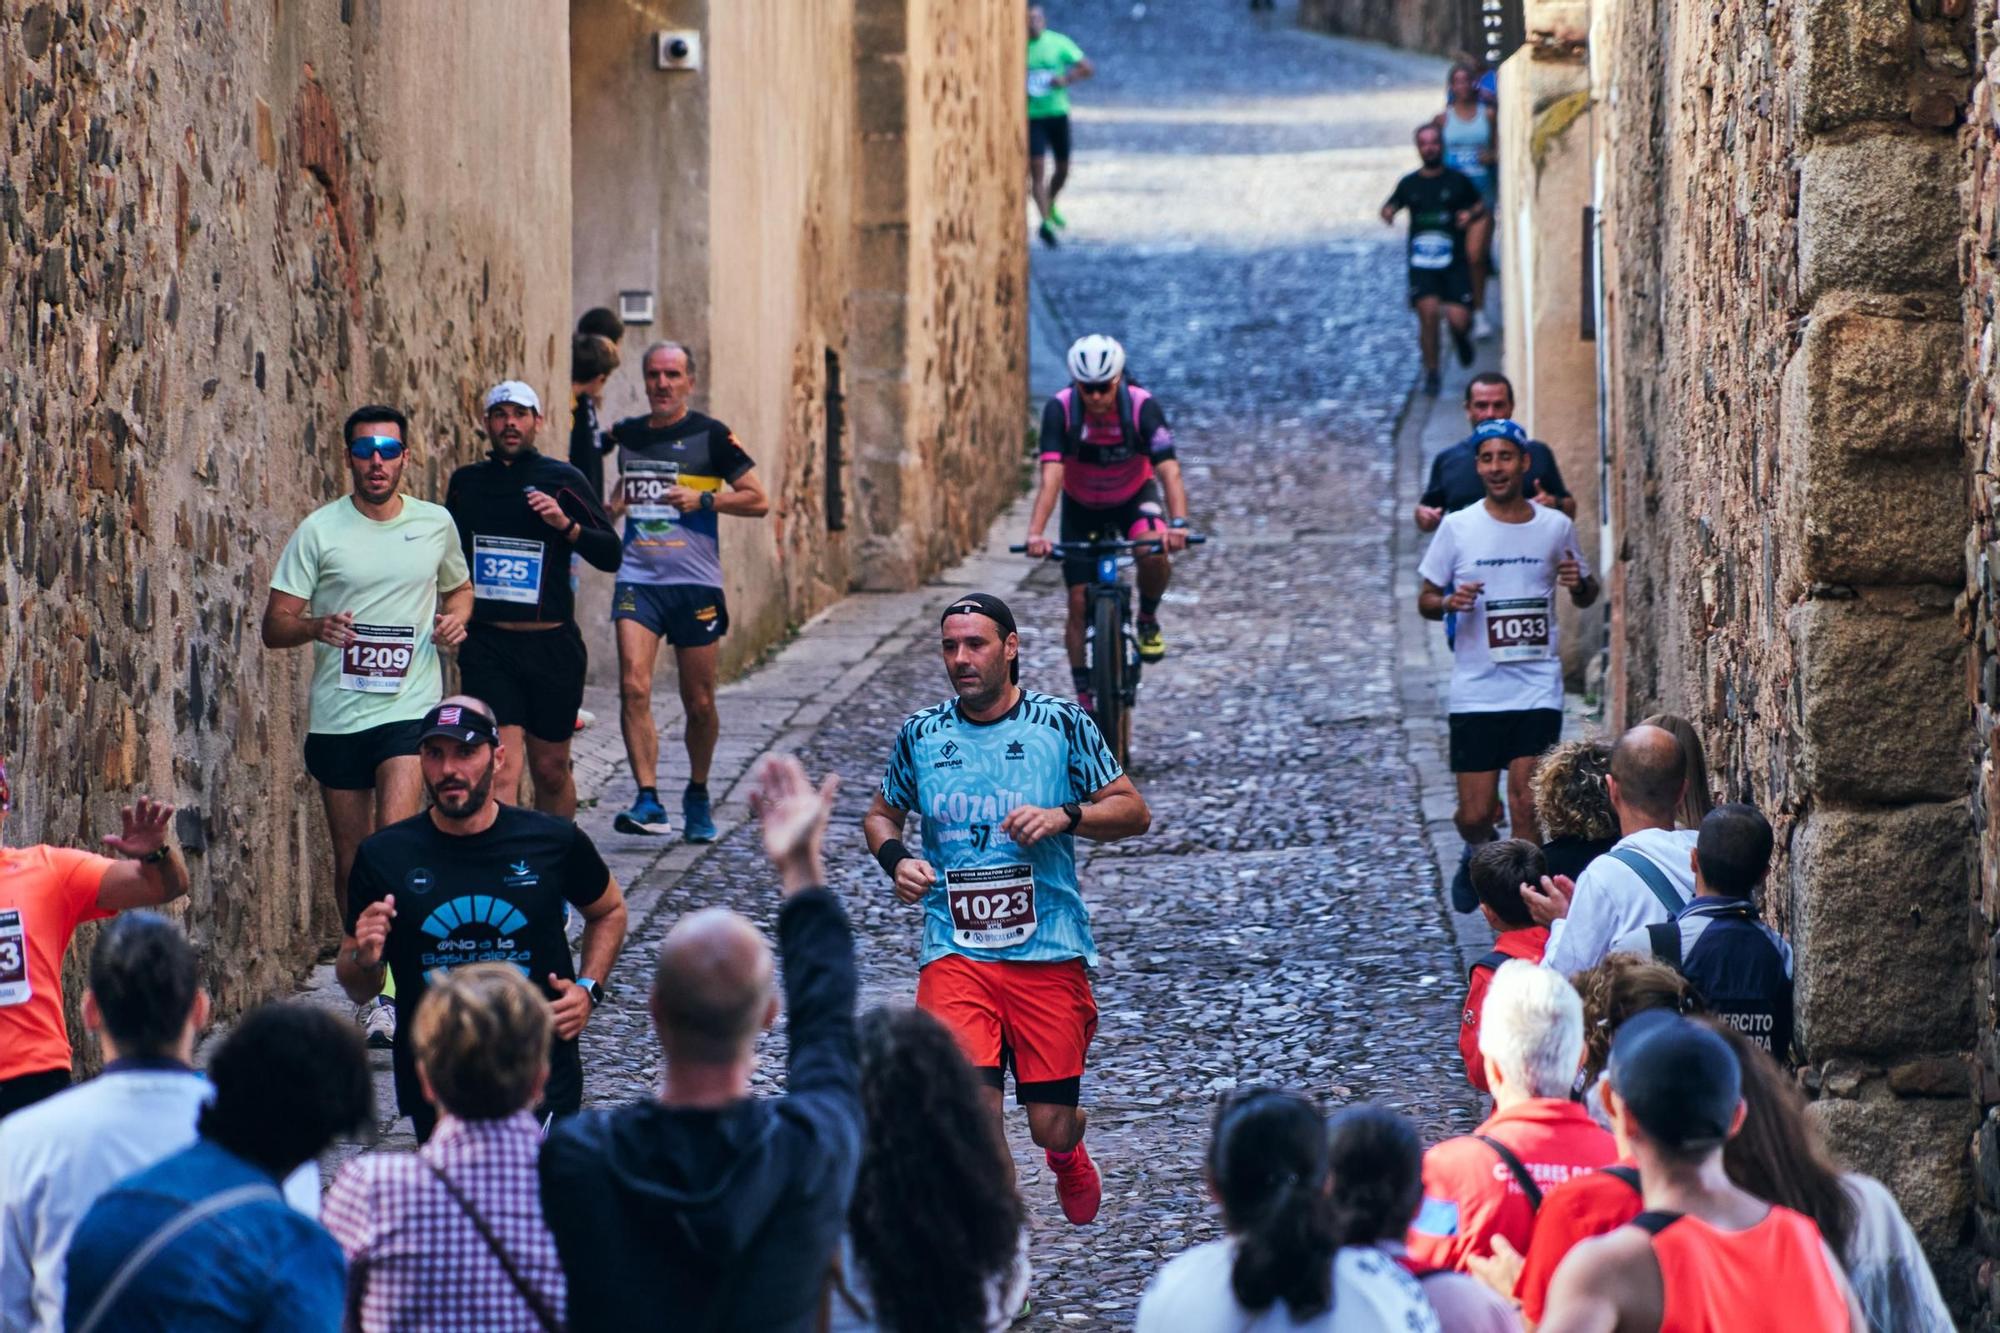 GALERÍA | Mil 'runners' corren la media maratón de Cáceres